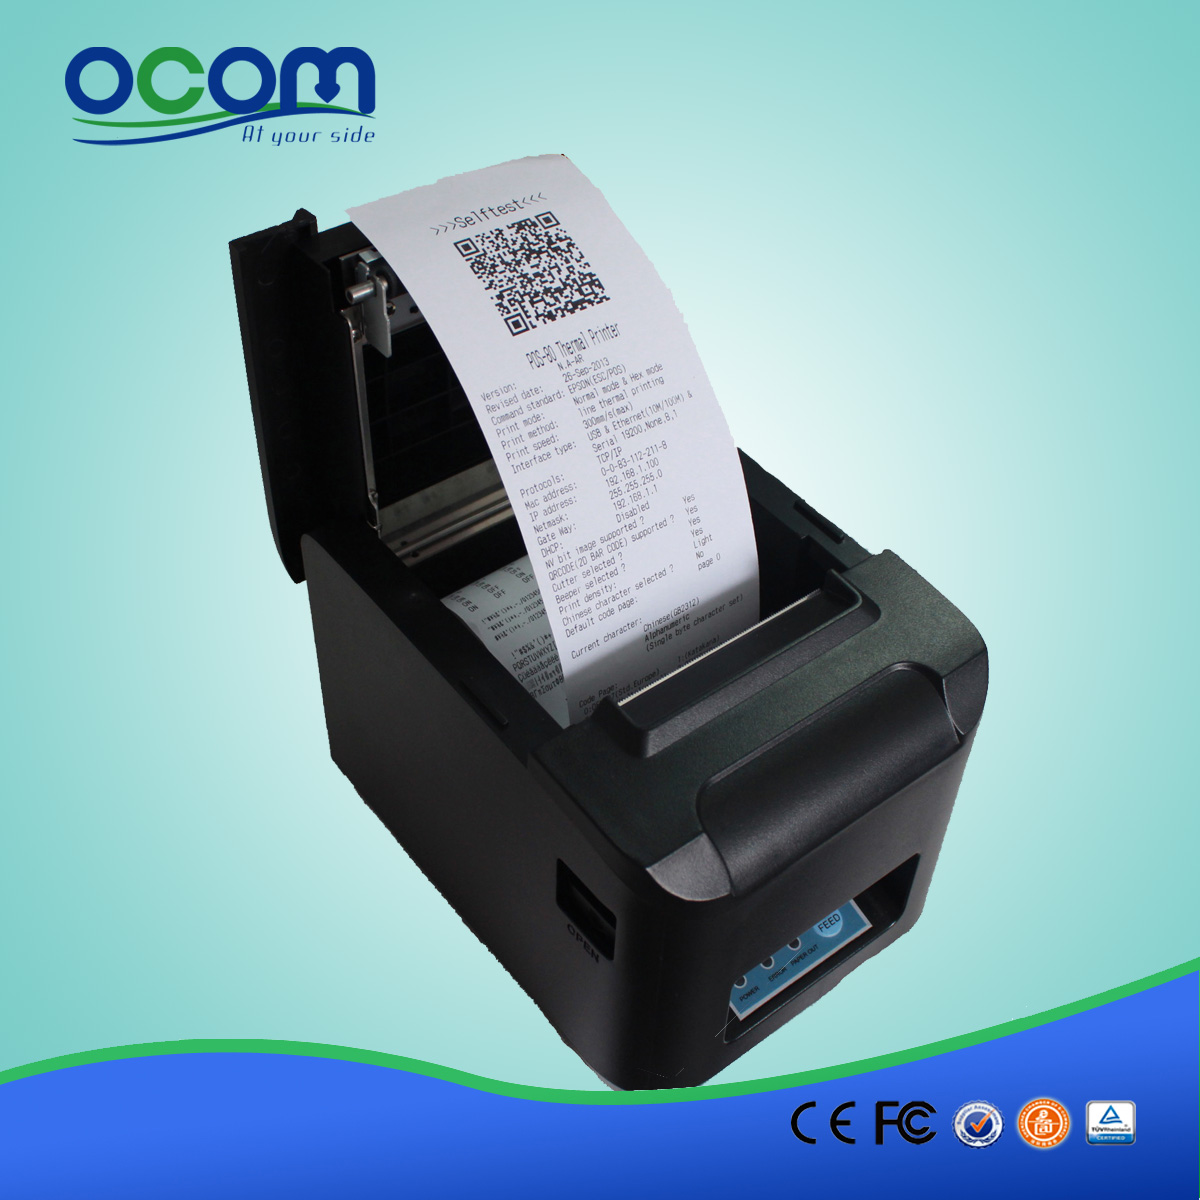 80 millimetri ad alta velocità taglierina automatica Pos Thermal Receipt Printer